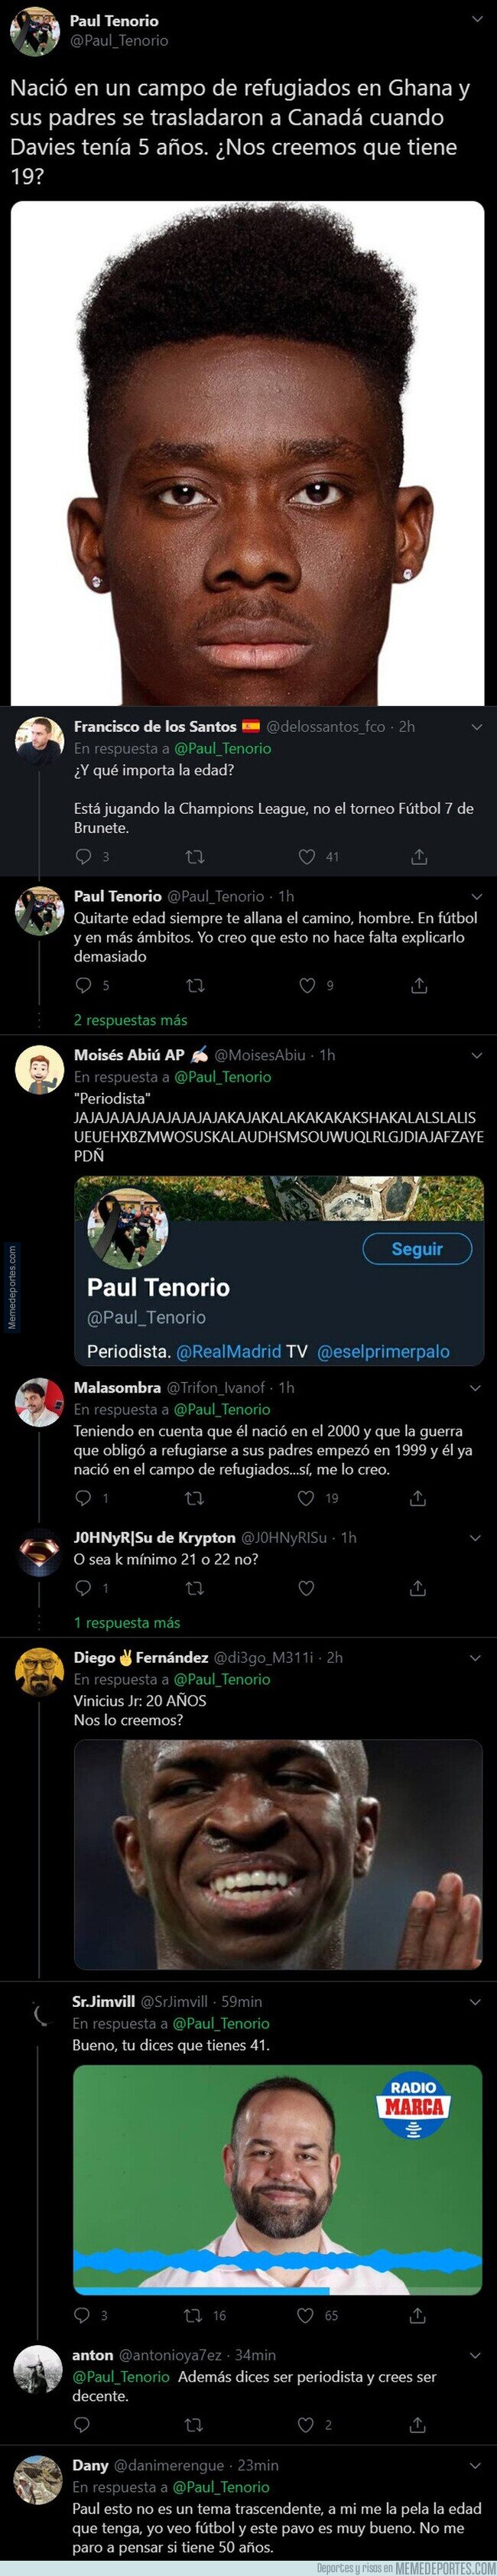 1113789 - El periodista Paul Tenorio, de Real Madrid TV, la lía pardísima con este tuit racista sobre Davies del Bayern